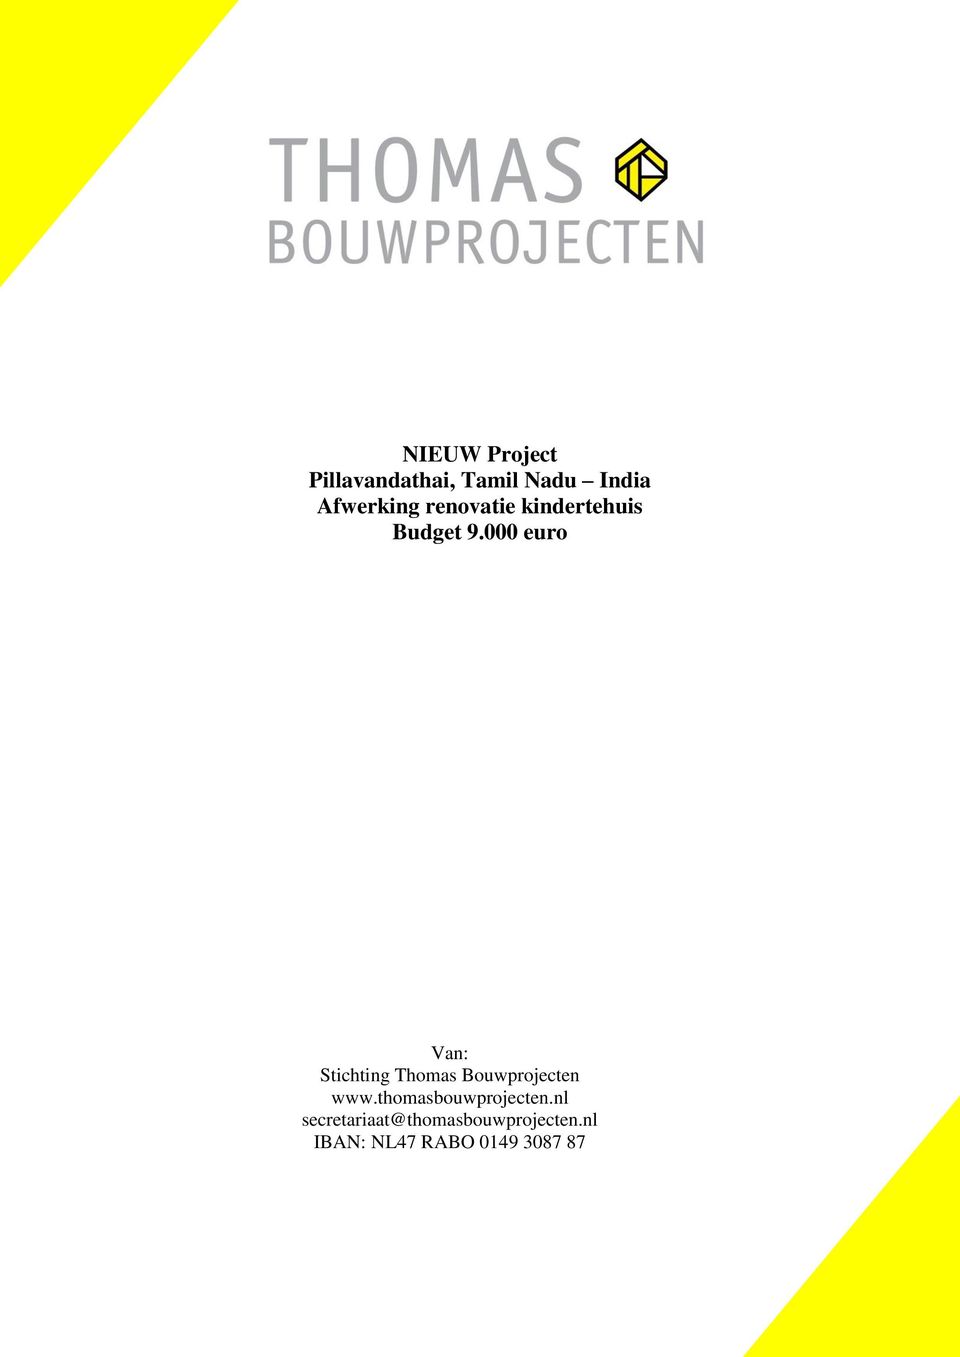 000 euro Van: Stichting Thomas Bouwprojecten www.